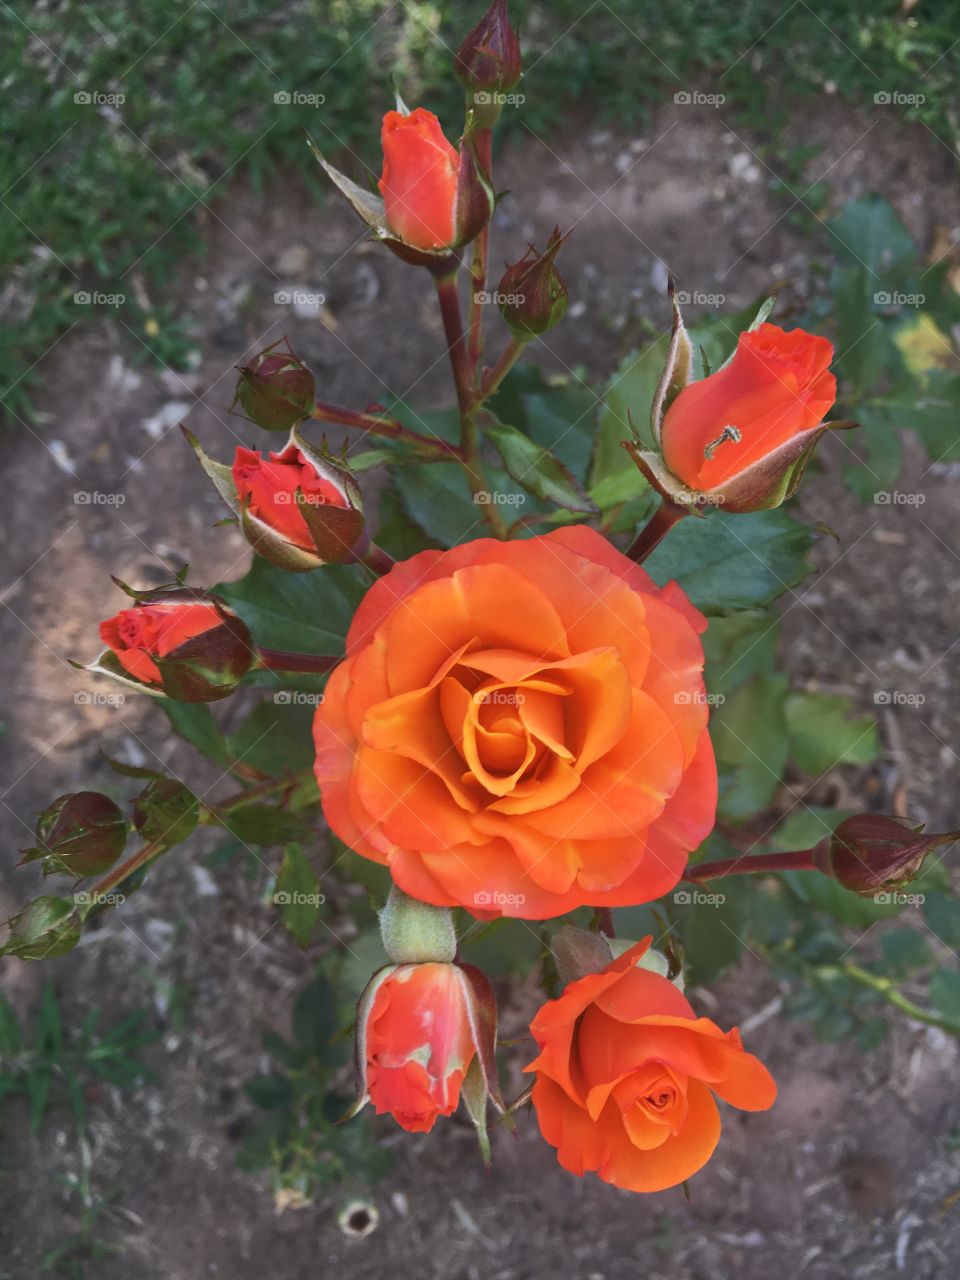 🌺Fim de #cooper!
Suado, cansado e feliz, curtindo a beleza das mini #rosas laranjas.
🏁
#corrida
#running
#flowers
#CorujãoDaMadrugada
#alvorada
#flor
#flores